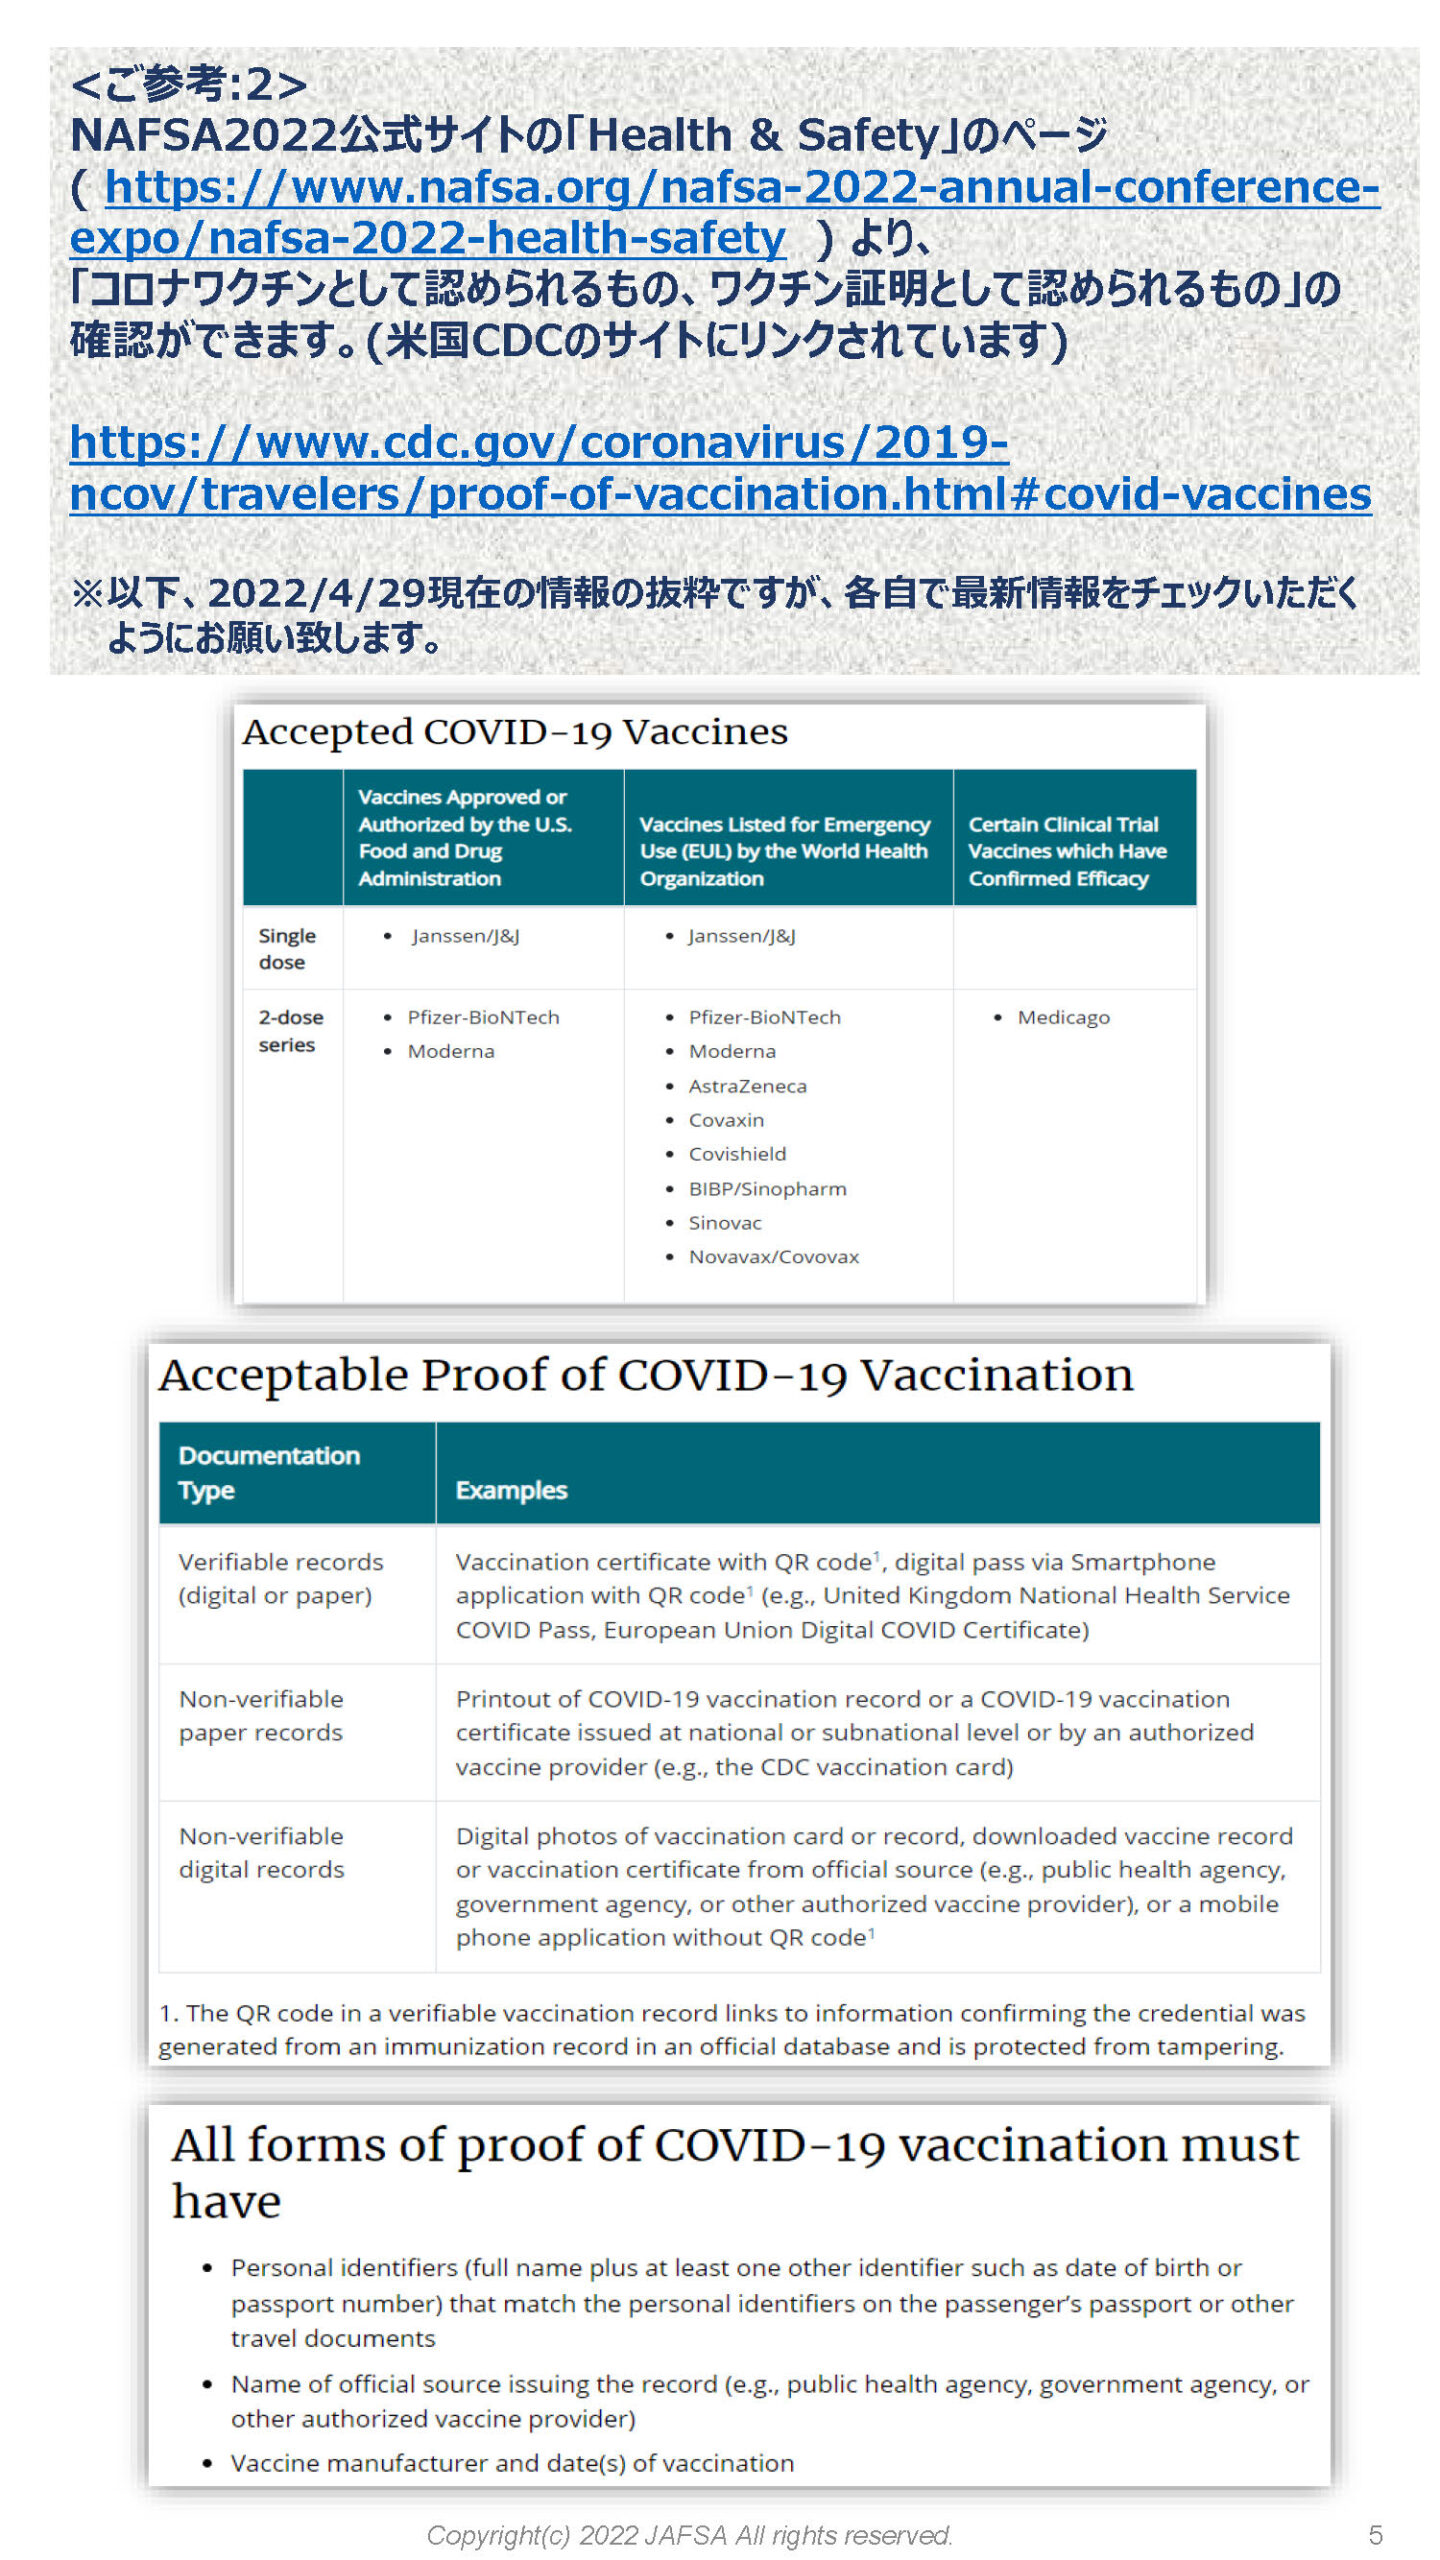 コロナワクチン接種証明のuploadの仕方 P5 (NAFSA2022)